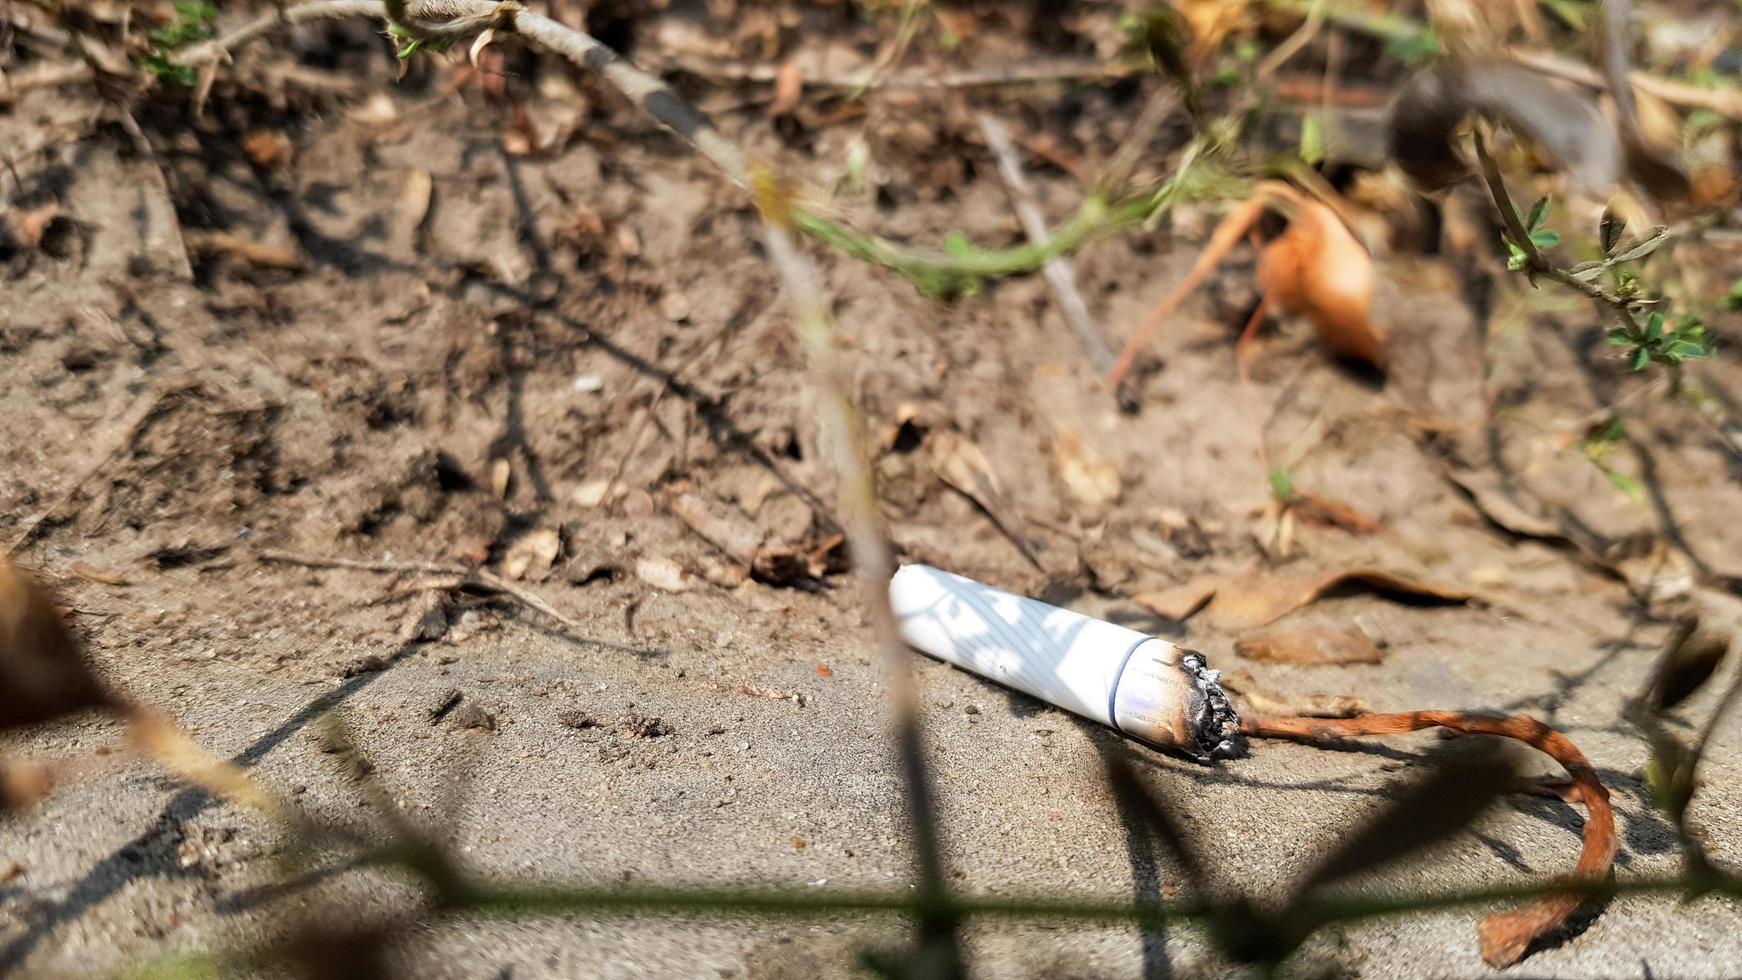 sigaretta gettata accidentalmente nell'erba secca. mozzicone di sigaretta gettato in un prato verde, inquinando la natura e l'ambiente foto